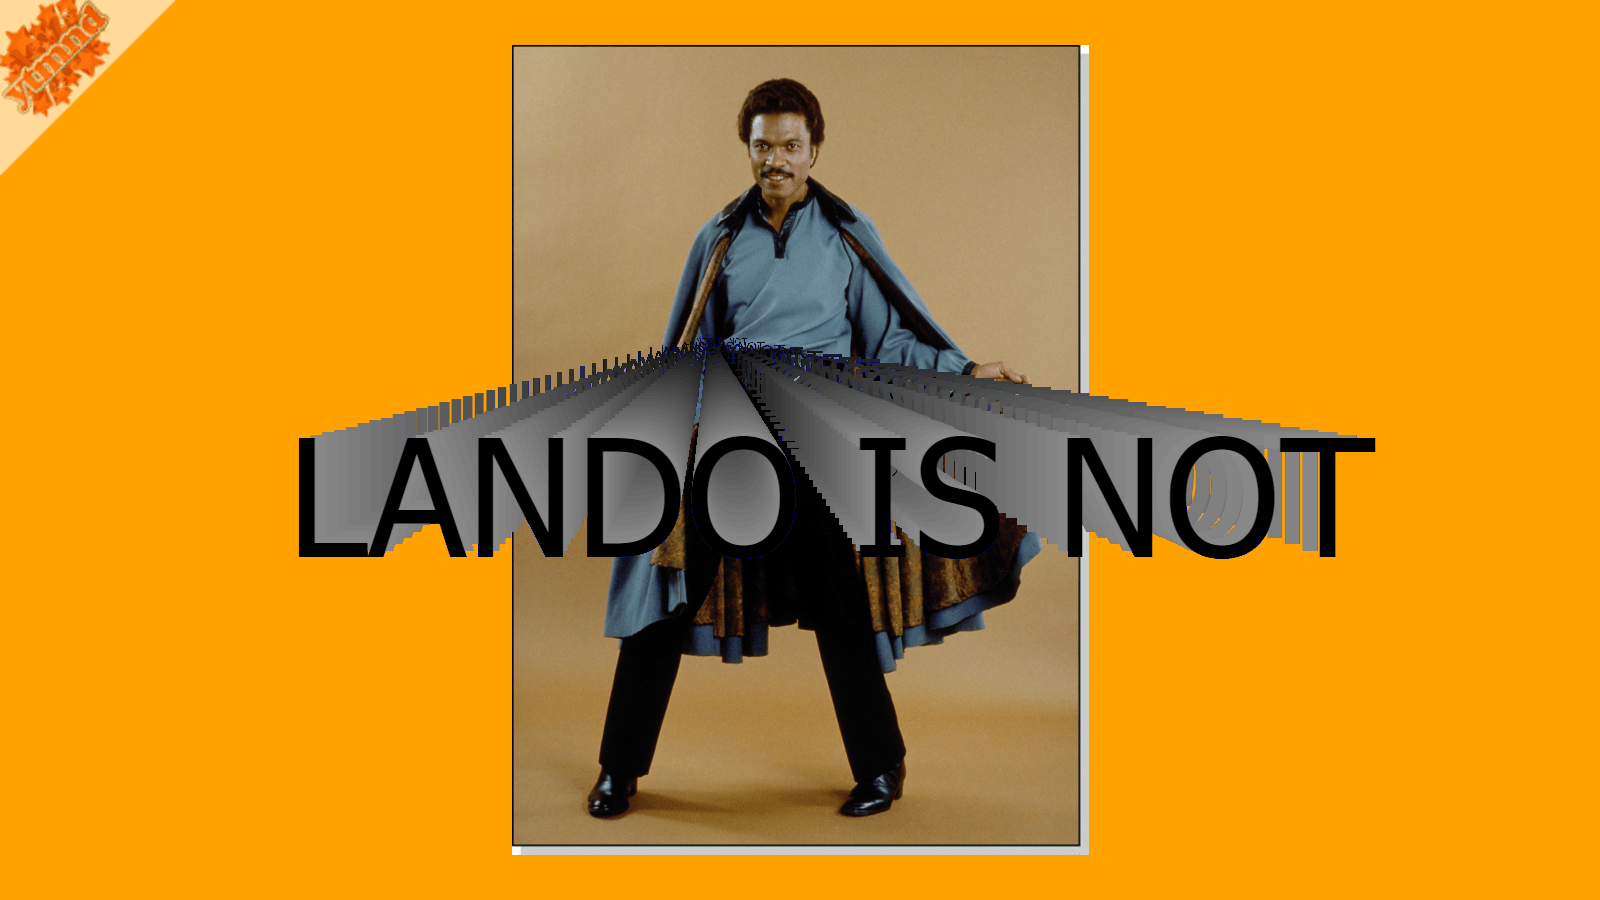 Lando is not. Lando Calrissian YTMND fad